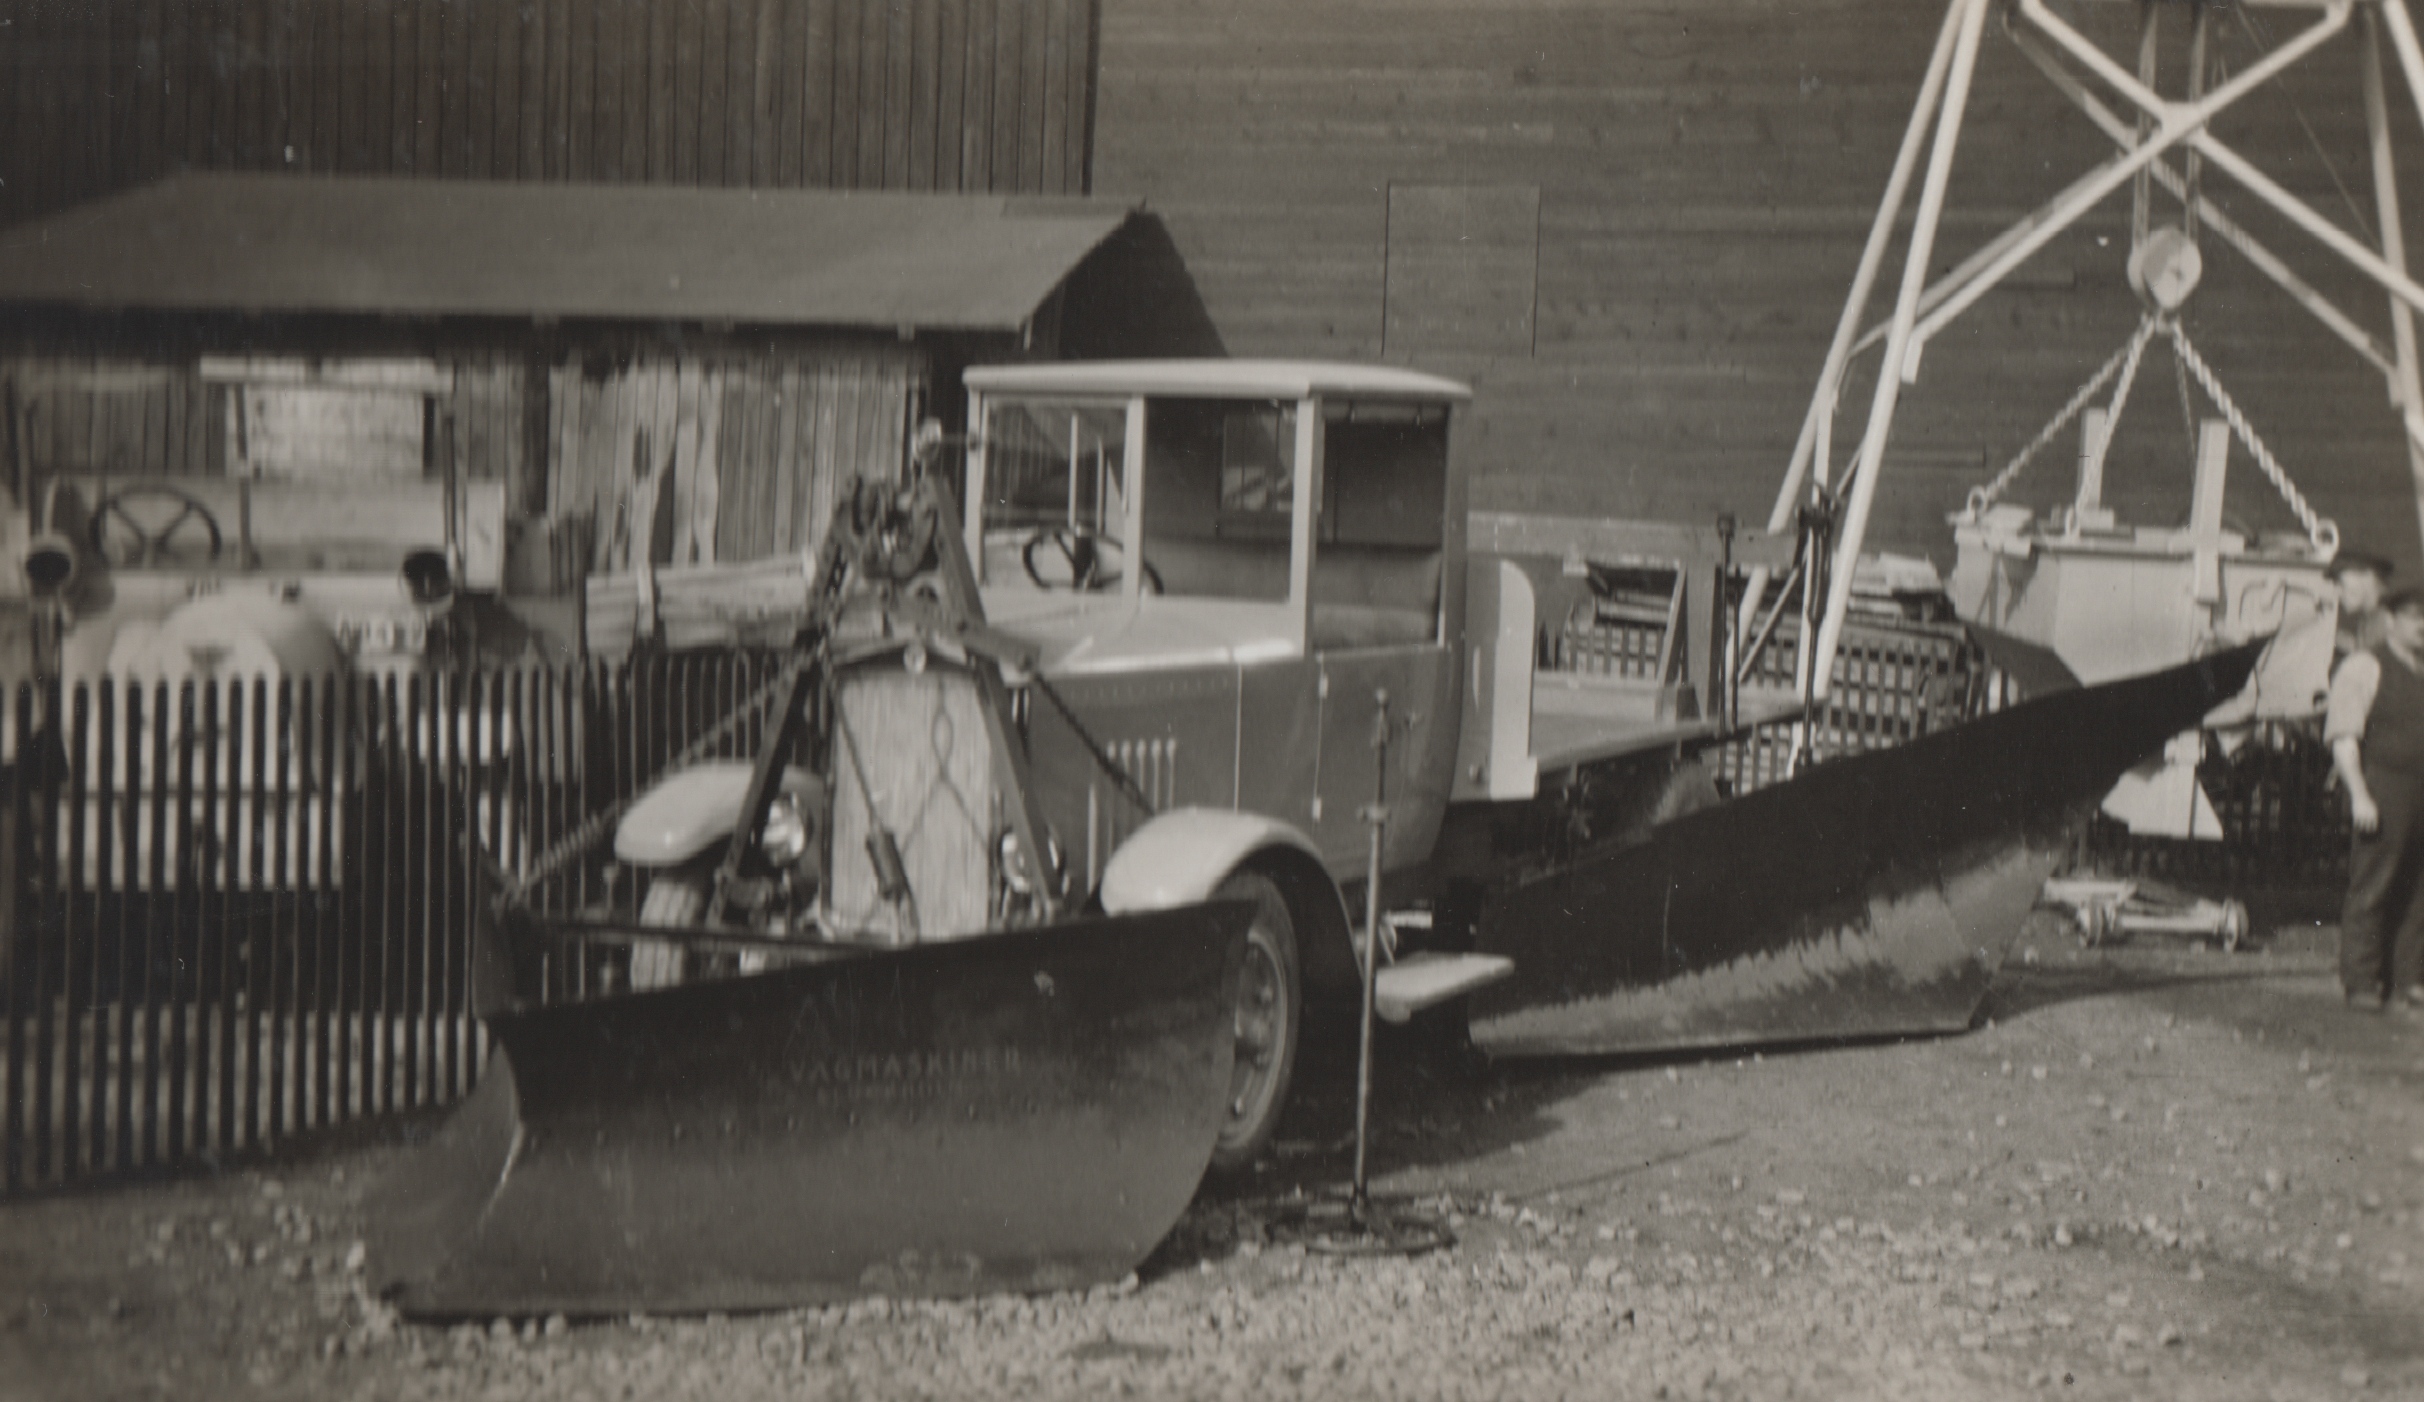 1927. aastal lõpul jõudis Eestisse esimene Rootsis AB Vägmaskiner tehases valmistatud lumesahk Ambra, mis kinnitati veoauto ette. Eesmärgiga sahka katsetada, anti seade üle Harju maavalitsusele Tallinna–Nõmme ja Tallinna–Loksa teede lahtihoidmiseks. Rootsist ostetud saha katsetused 1928. aasta talvel andsid häid tulemusi. Fotol veoautole Scania-Vabis monteeritud lumesahk Ambra Rootsis 1927. aastal. (Foto: Rahvusarhiiv)